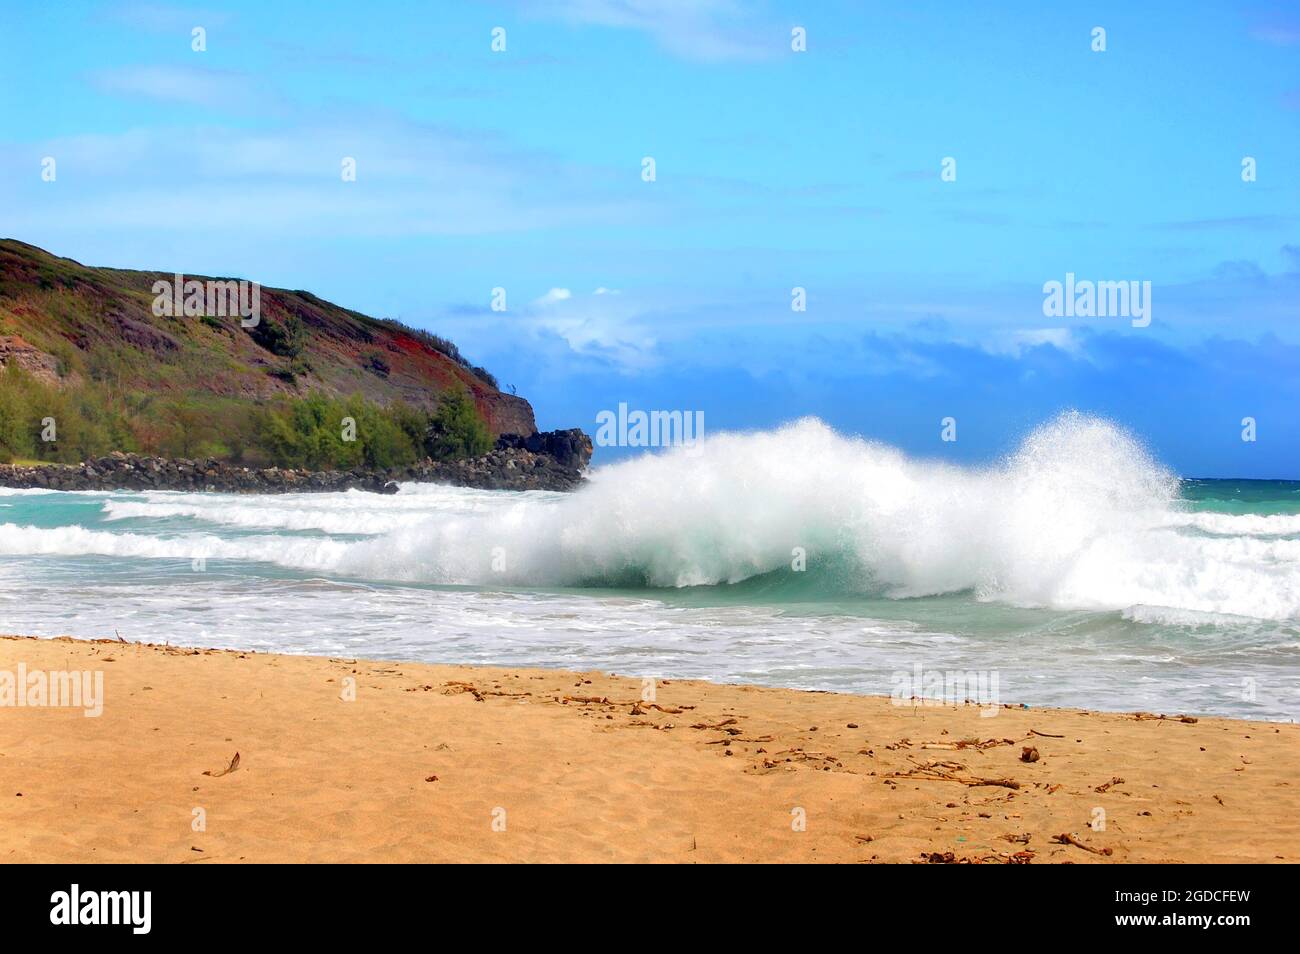 Una grande onda si tuffa verso la riva su una spiaggia deserta sull'isola di Kauai, Hawaii. I cieli sono blu e acqua acqua. Foto Stock